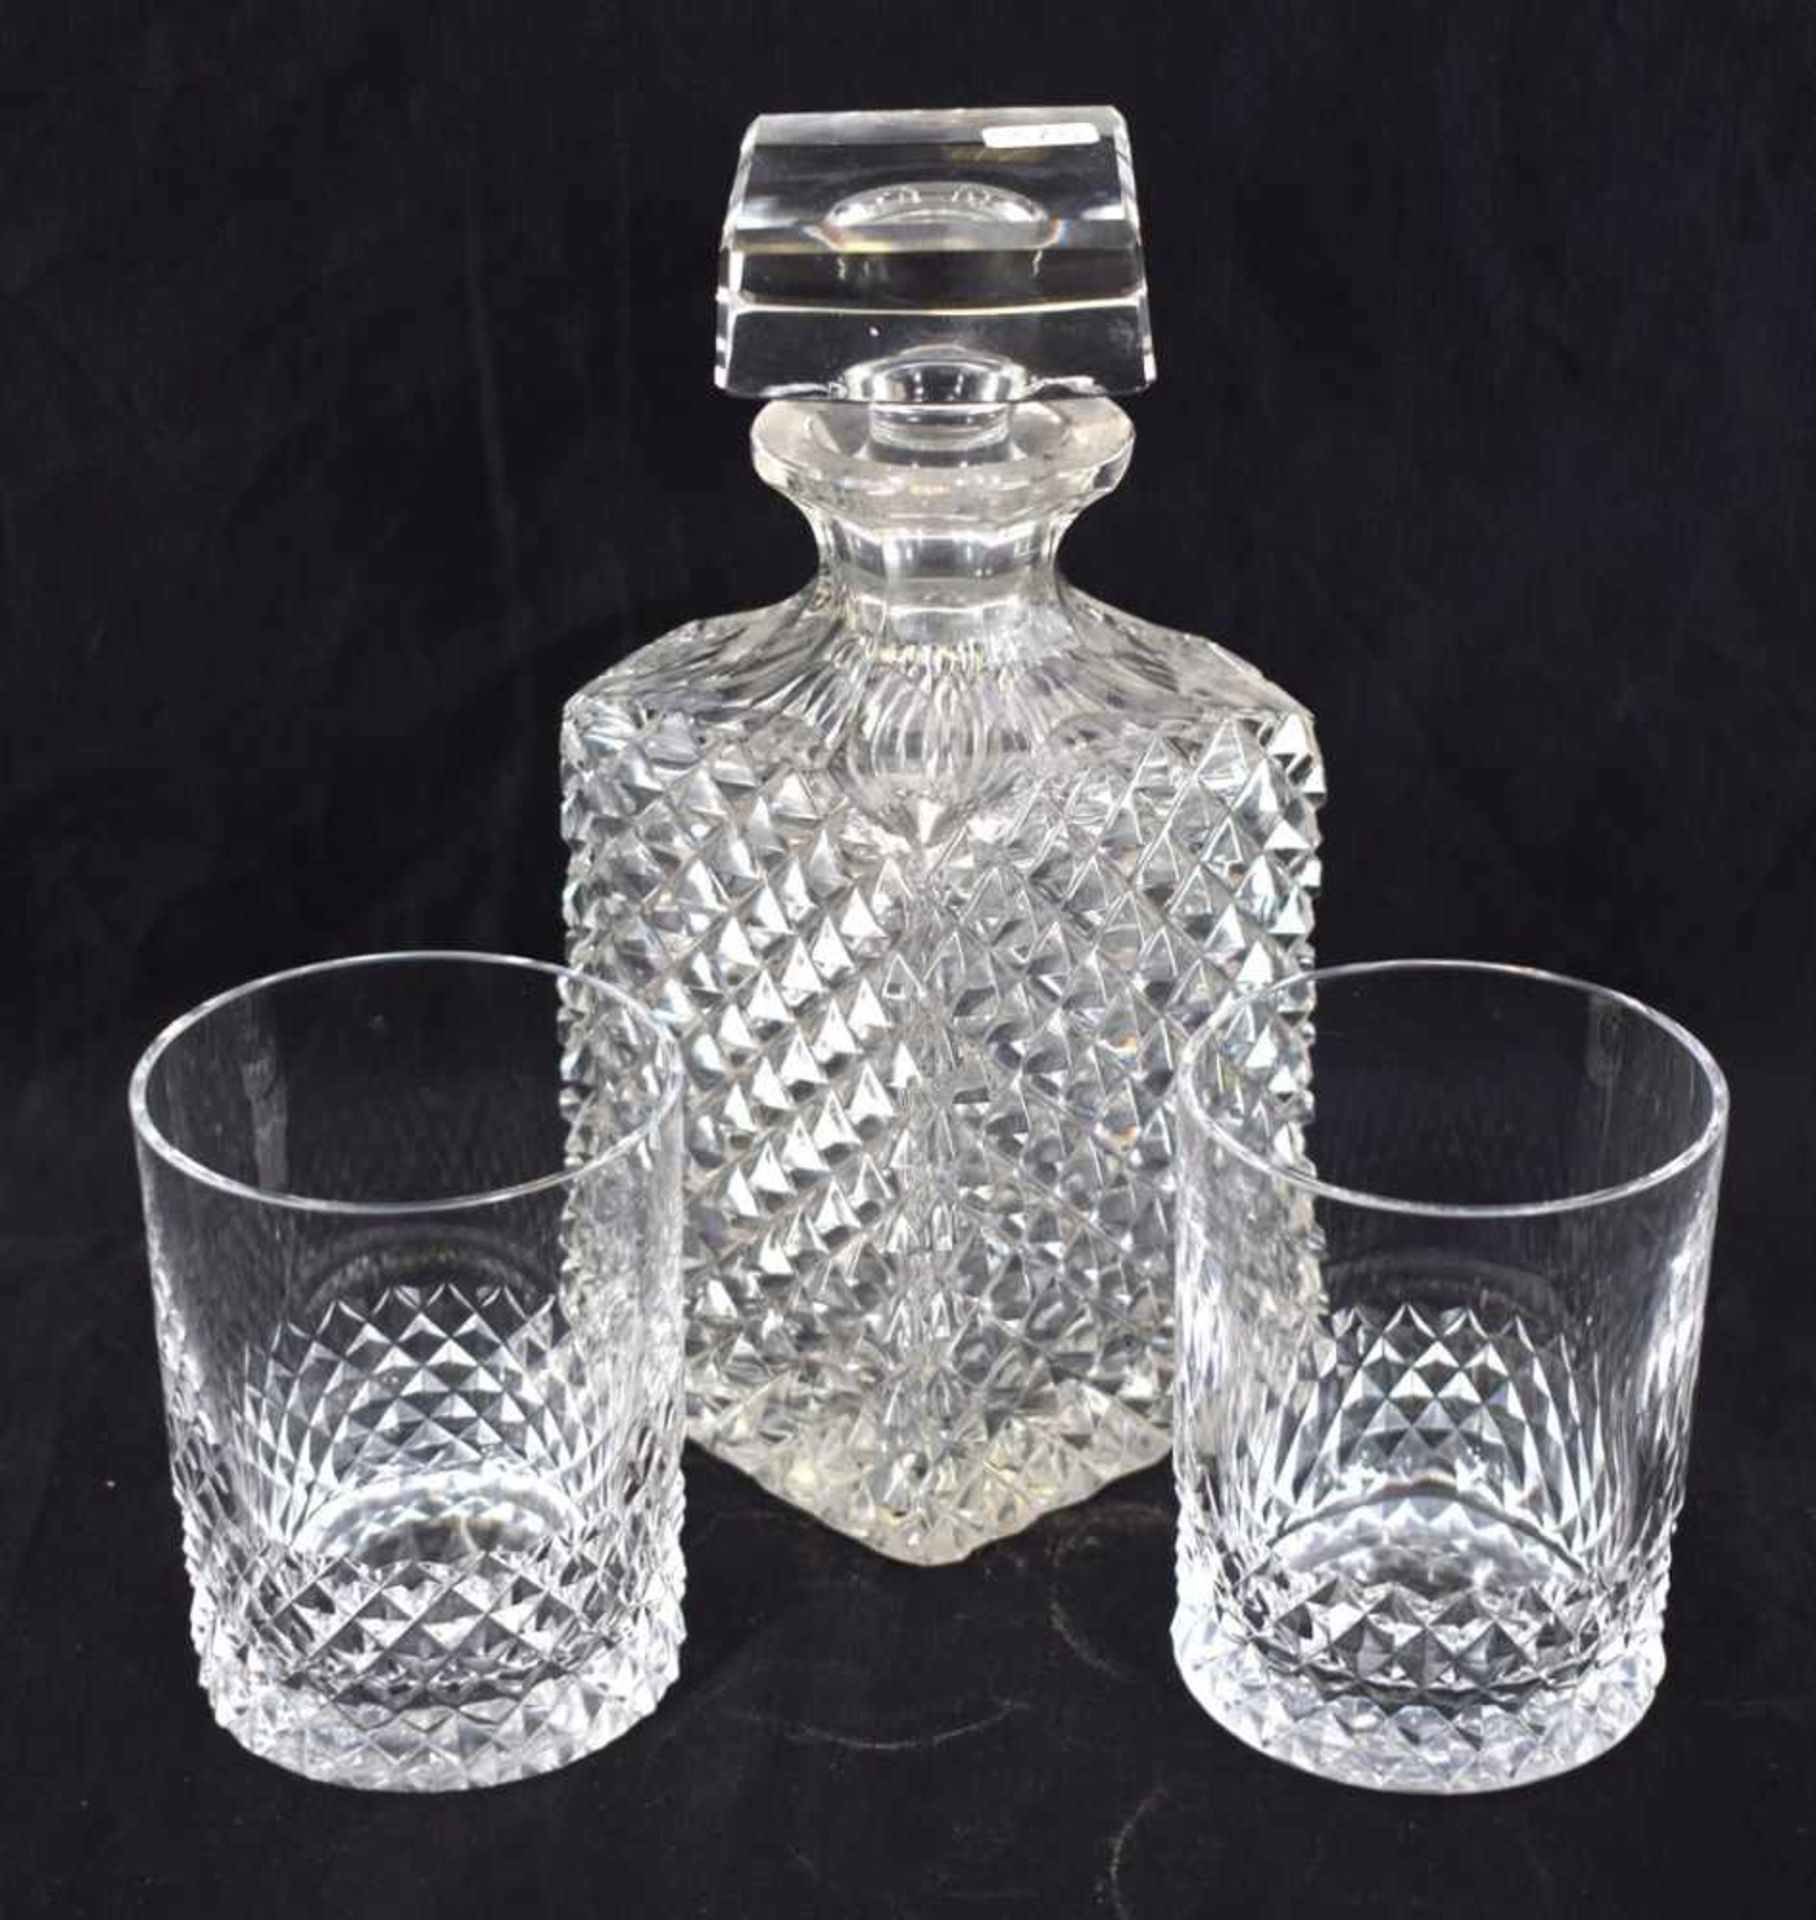 Karaffe mit zwei Gläsern farbl. Kristallglas, geschliffen verziert, H 22 cm